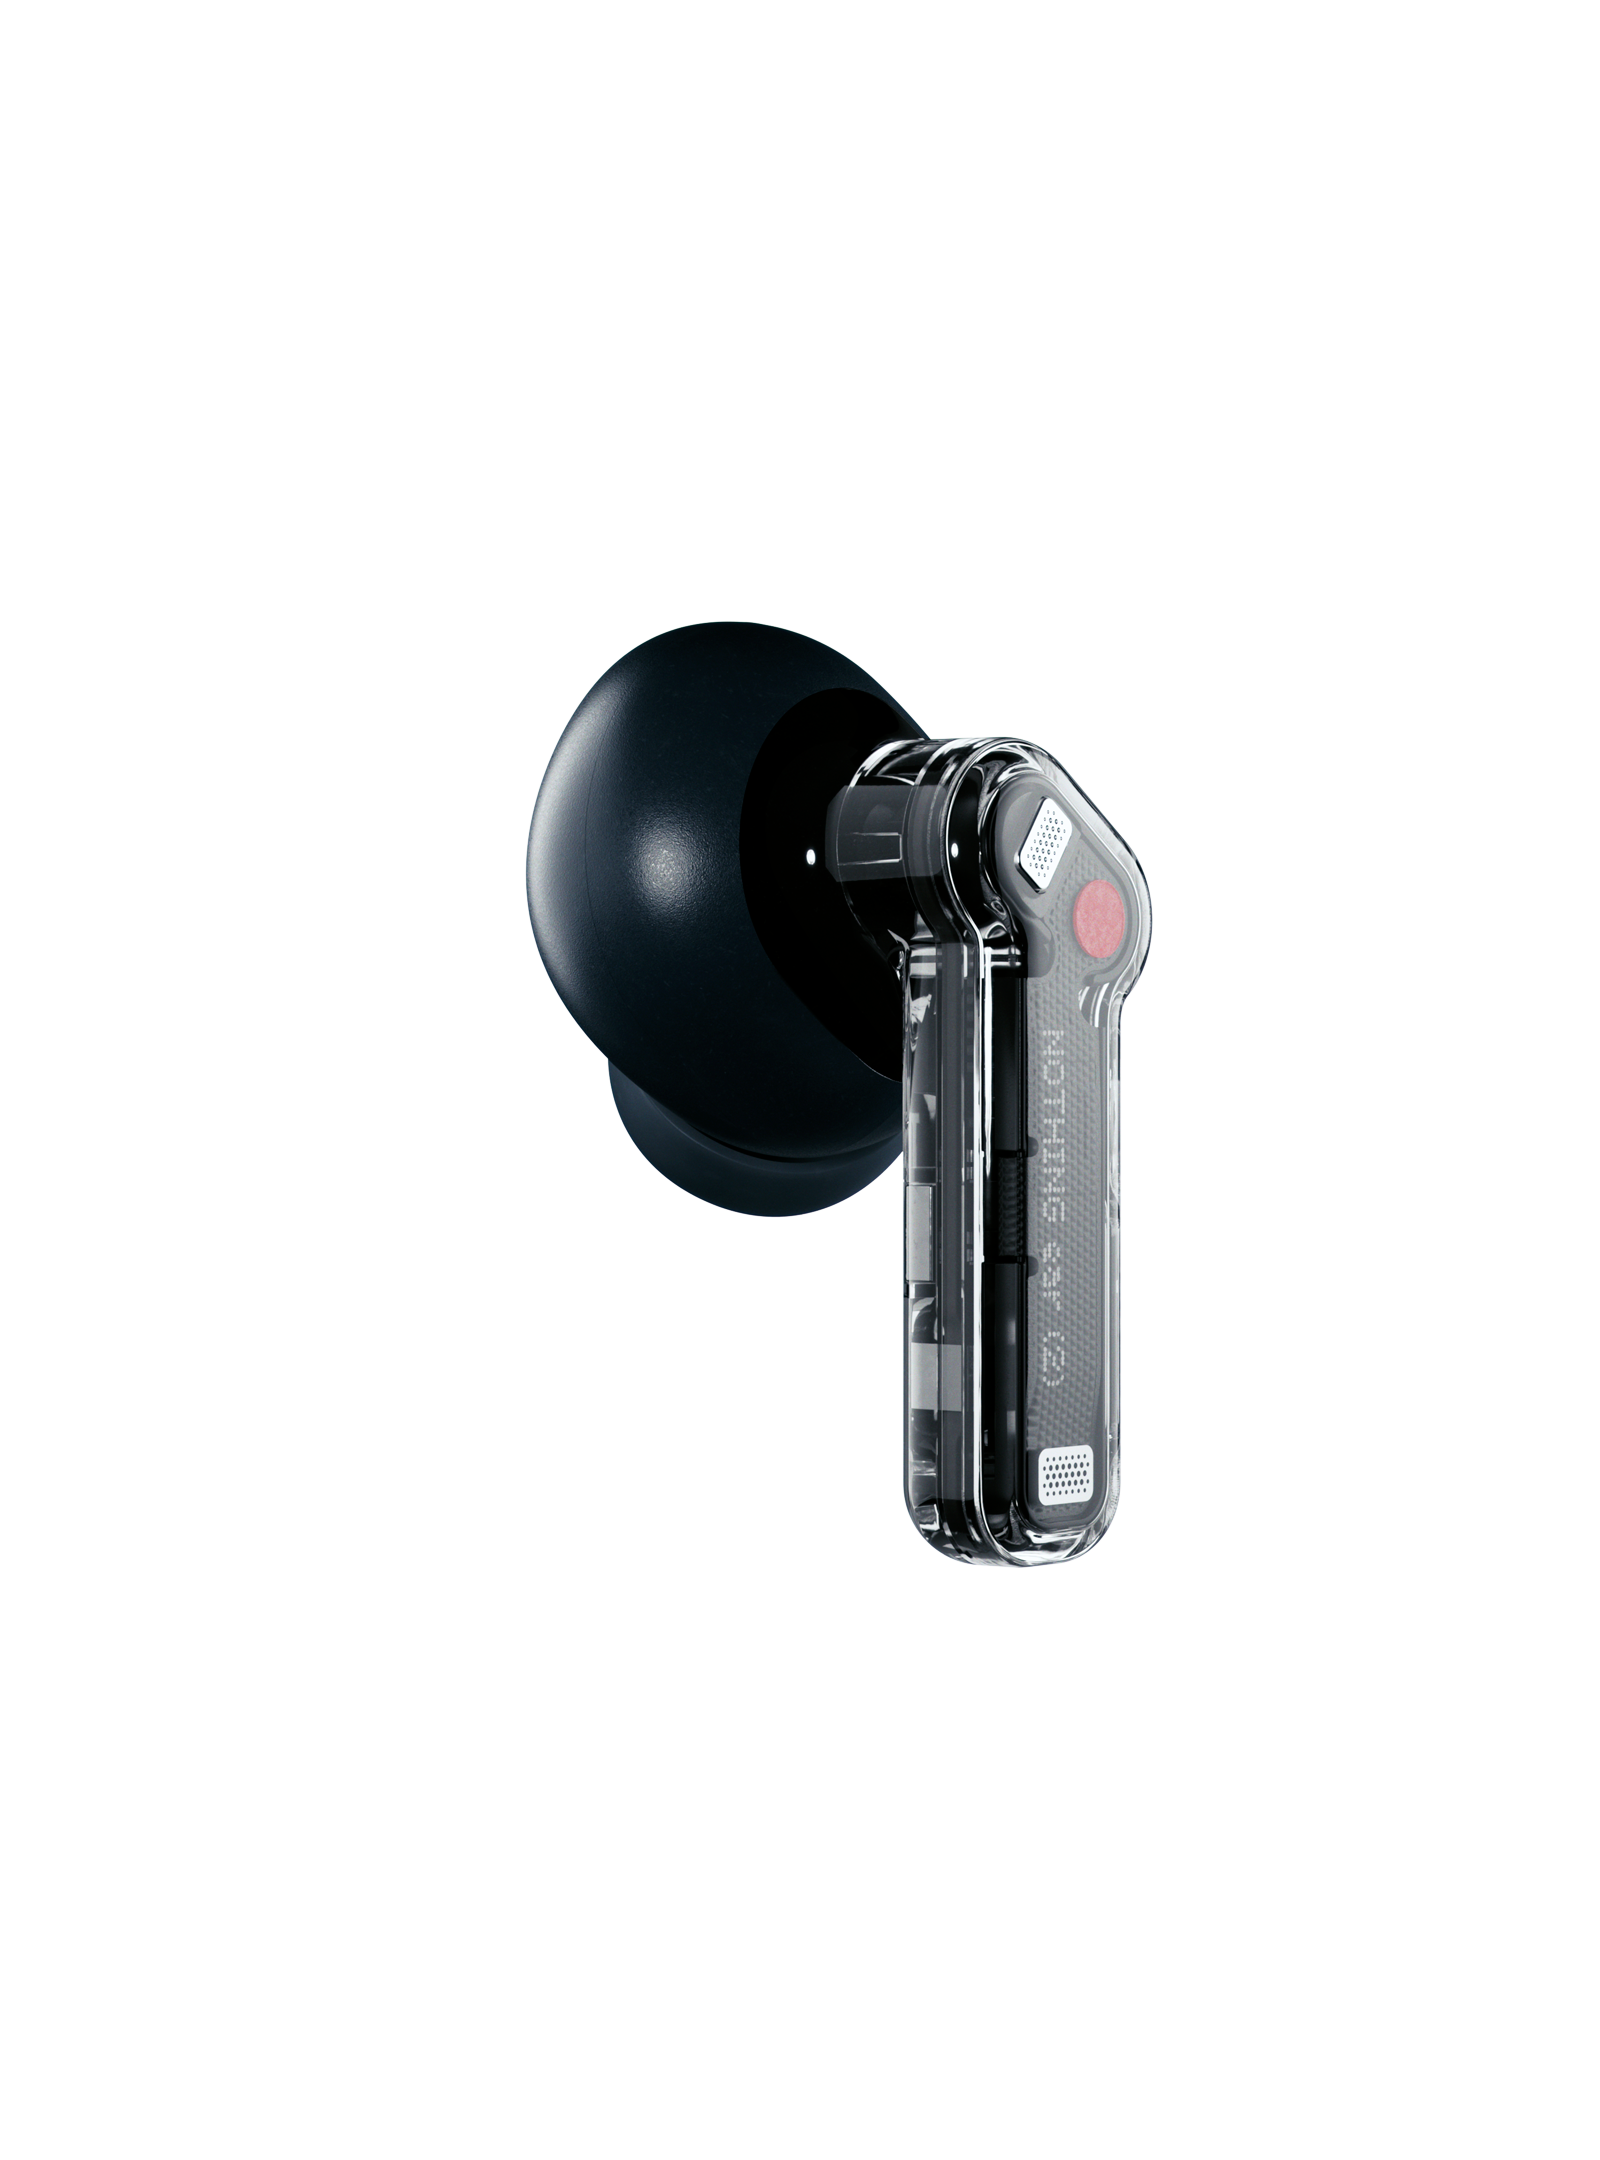 GSMPRO - Disfruta de una calidad de sonido excepcional y un diseño elegante  con los auriculares inalámbricos Nothing Ear (2). Con cancelación activa de  ruido y transparencia ajustable, son perfectos para cualquier